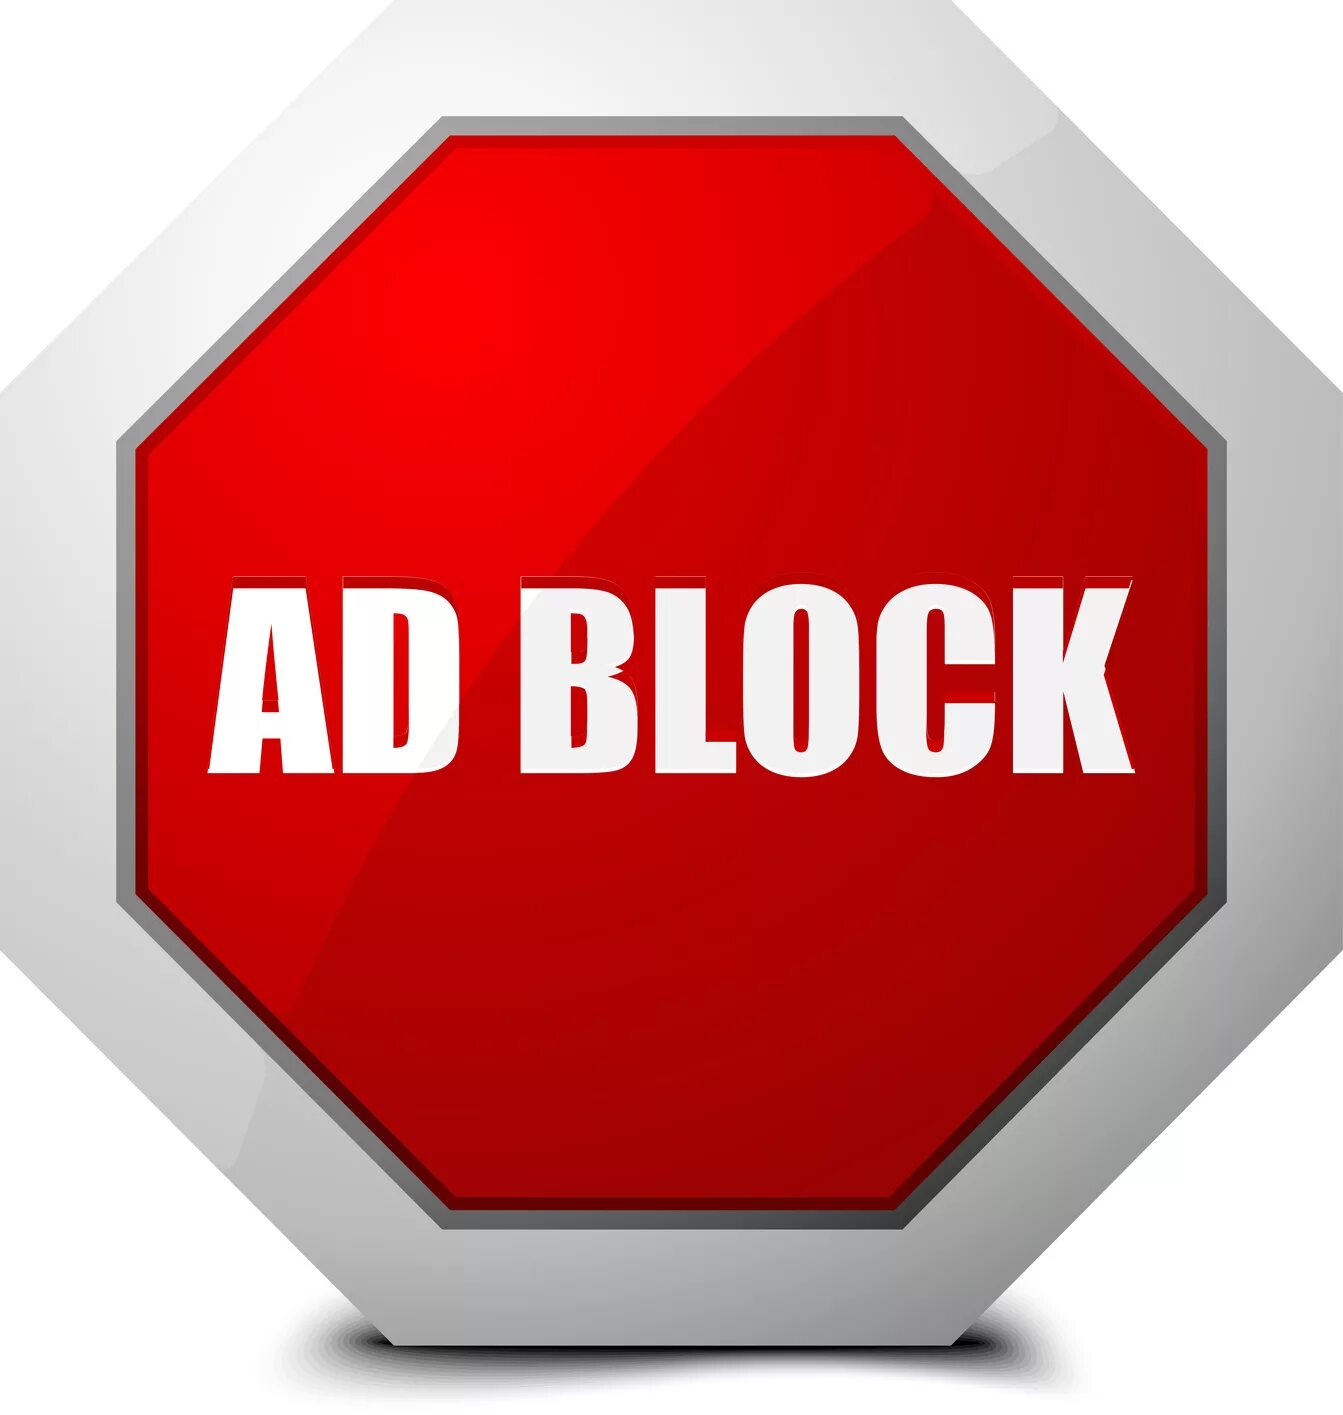 Какой блокировщик рекламы. ADBLOCK. Блокировщик рекламы. Логотип ADBLOCK. Значок блокировки рекламы.